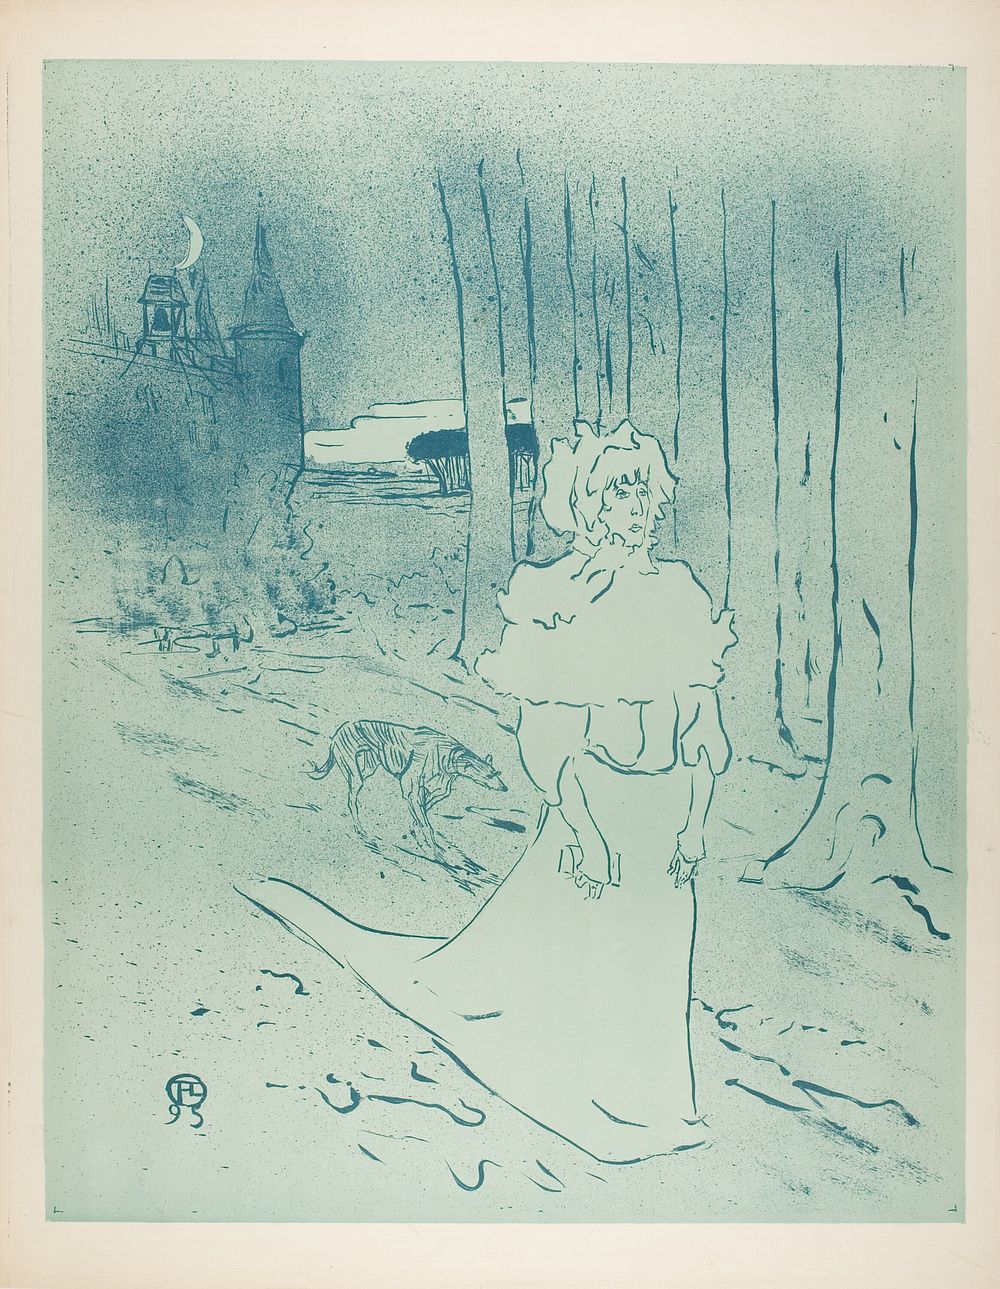 Le Tocsin by Henri de Toulouse-Lautrec